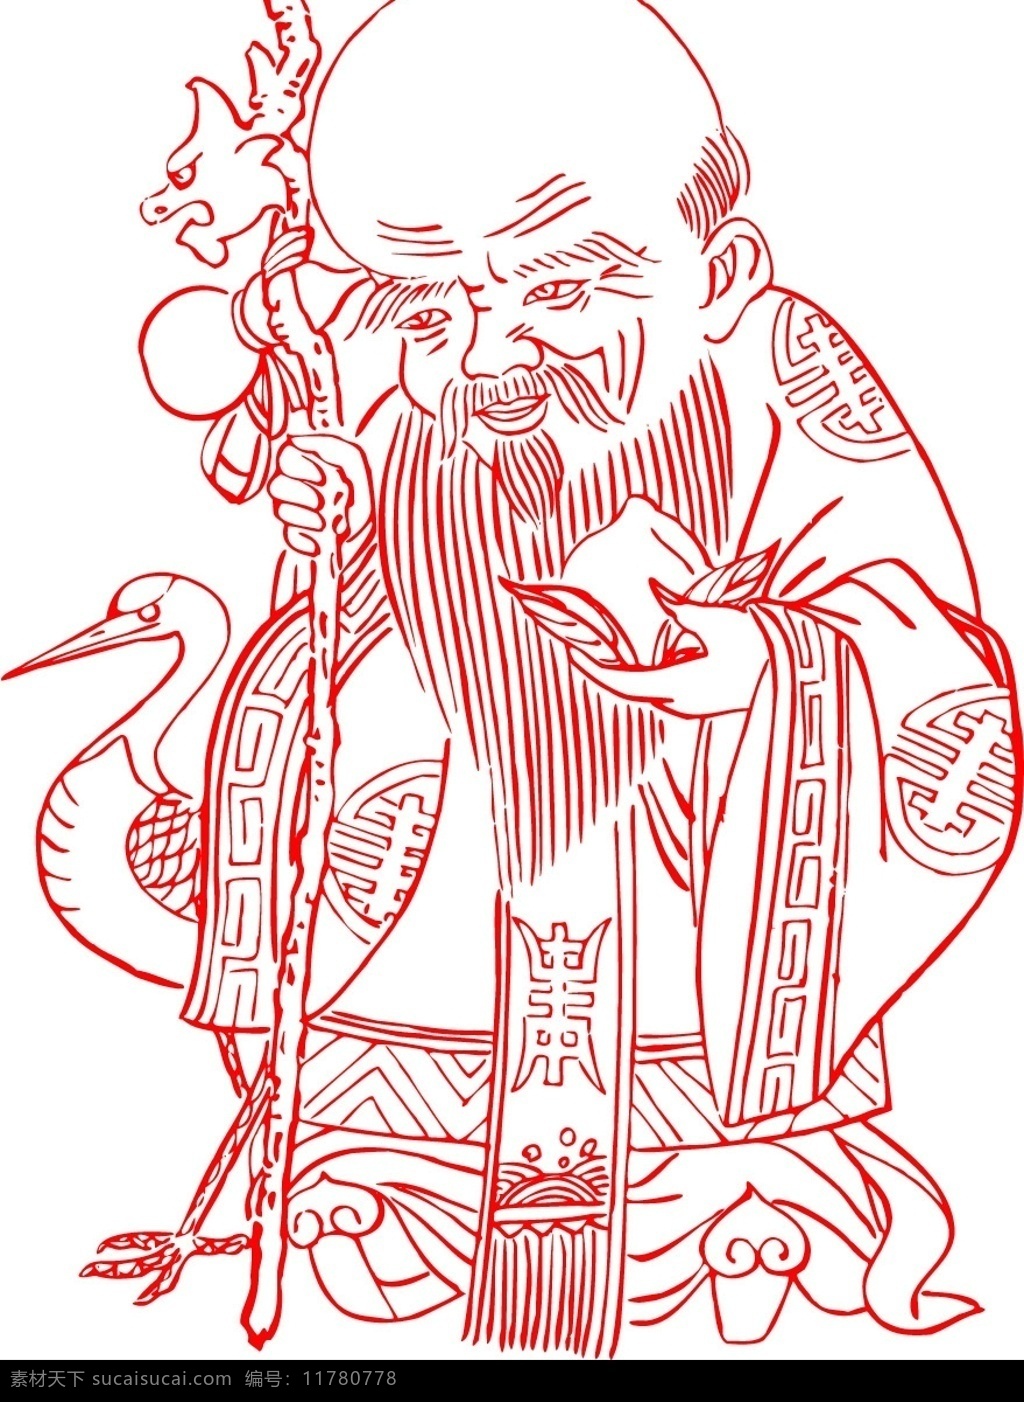 老寿星 文化艺术 节日素材 矢量图库